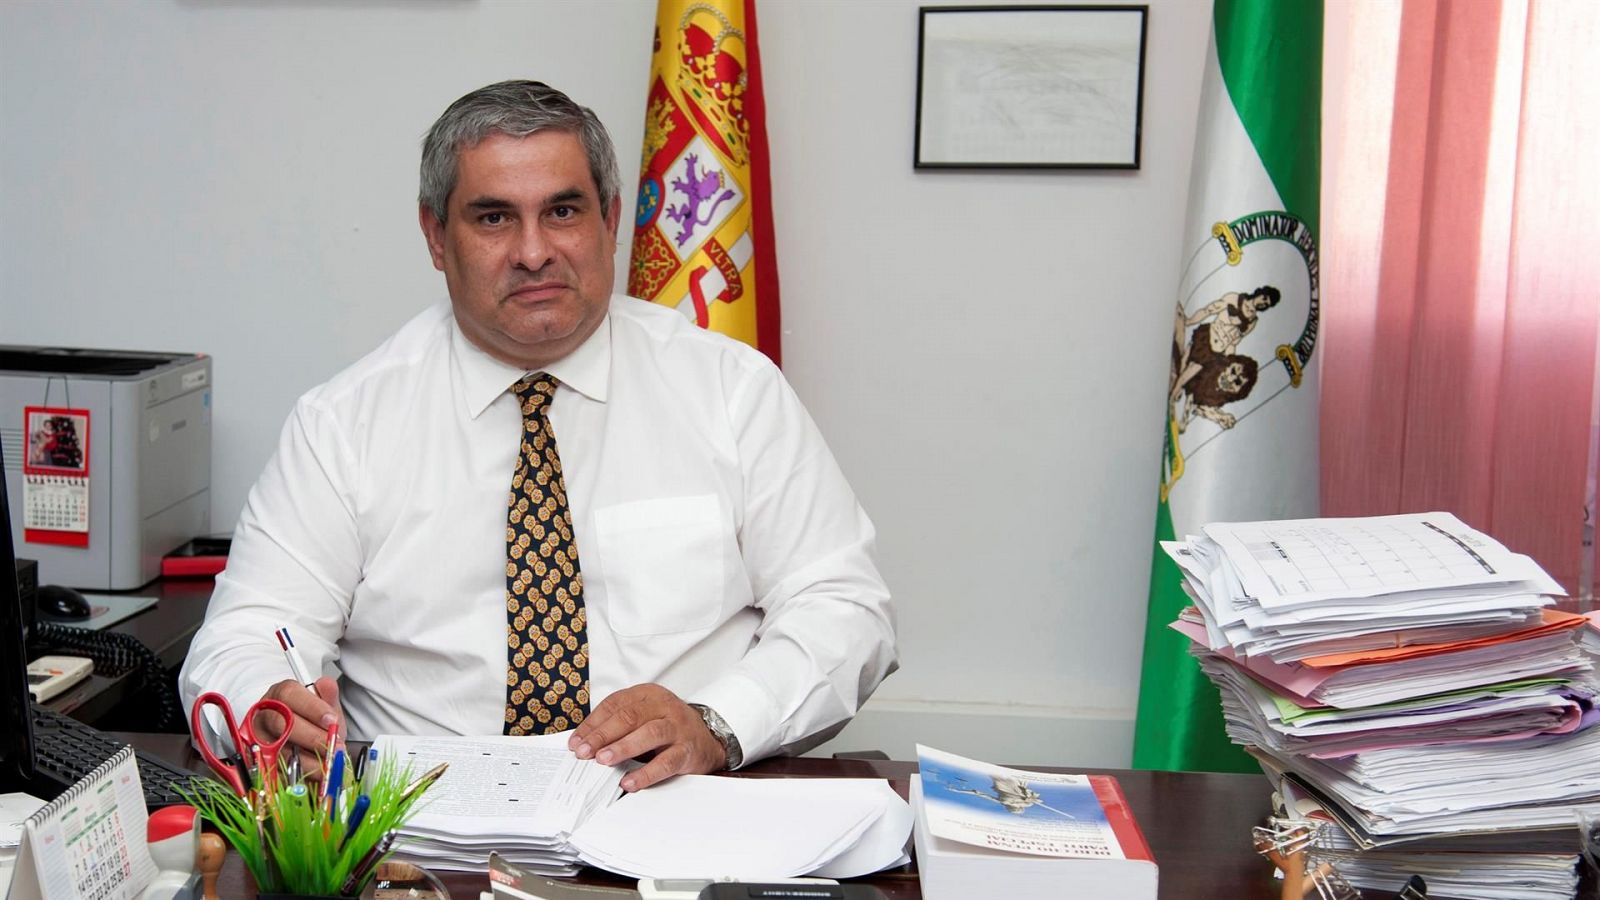 Las mañanas de RNE - Cisneros, fiscal jefe de Algeciras: "El impacto emocional ha sido grande" - Escuchar ahora